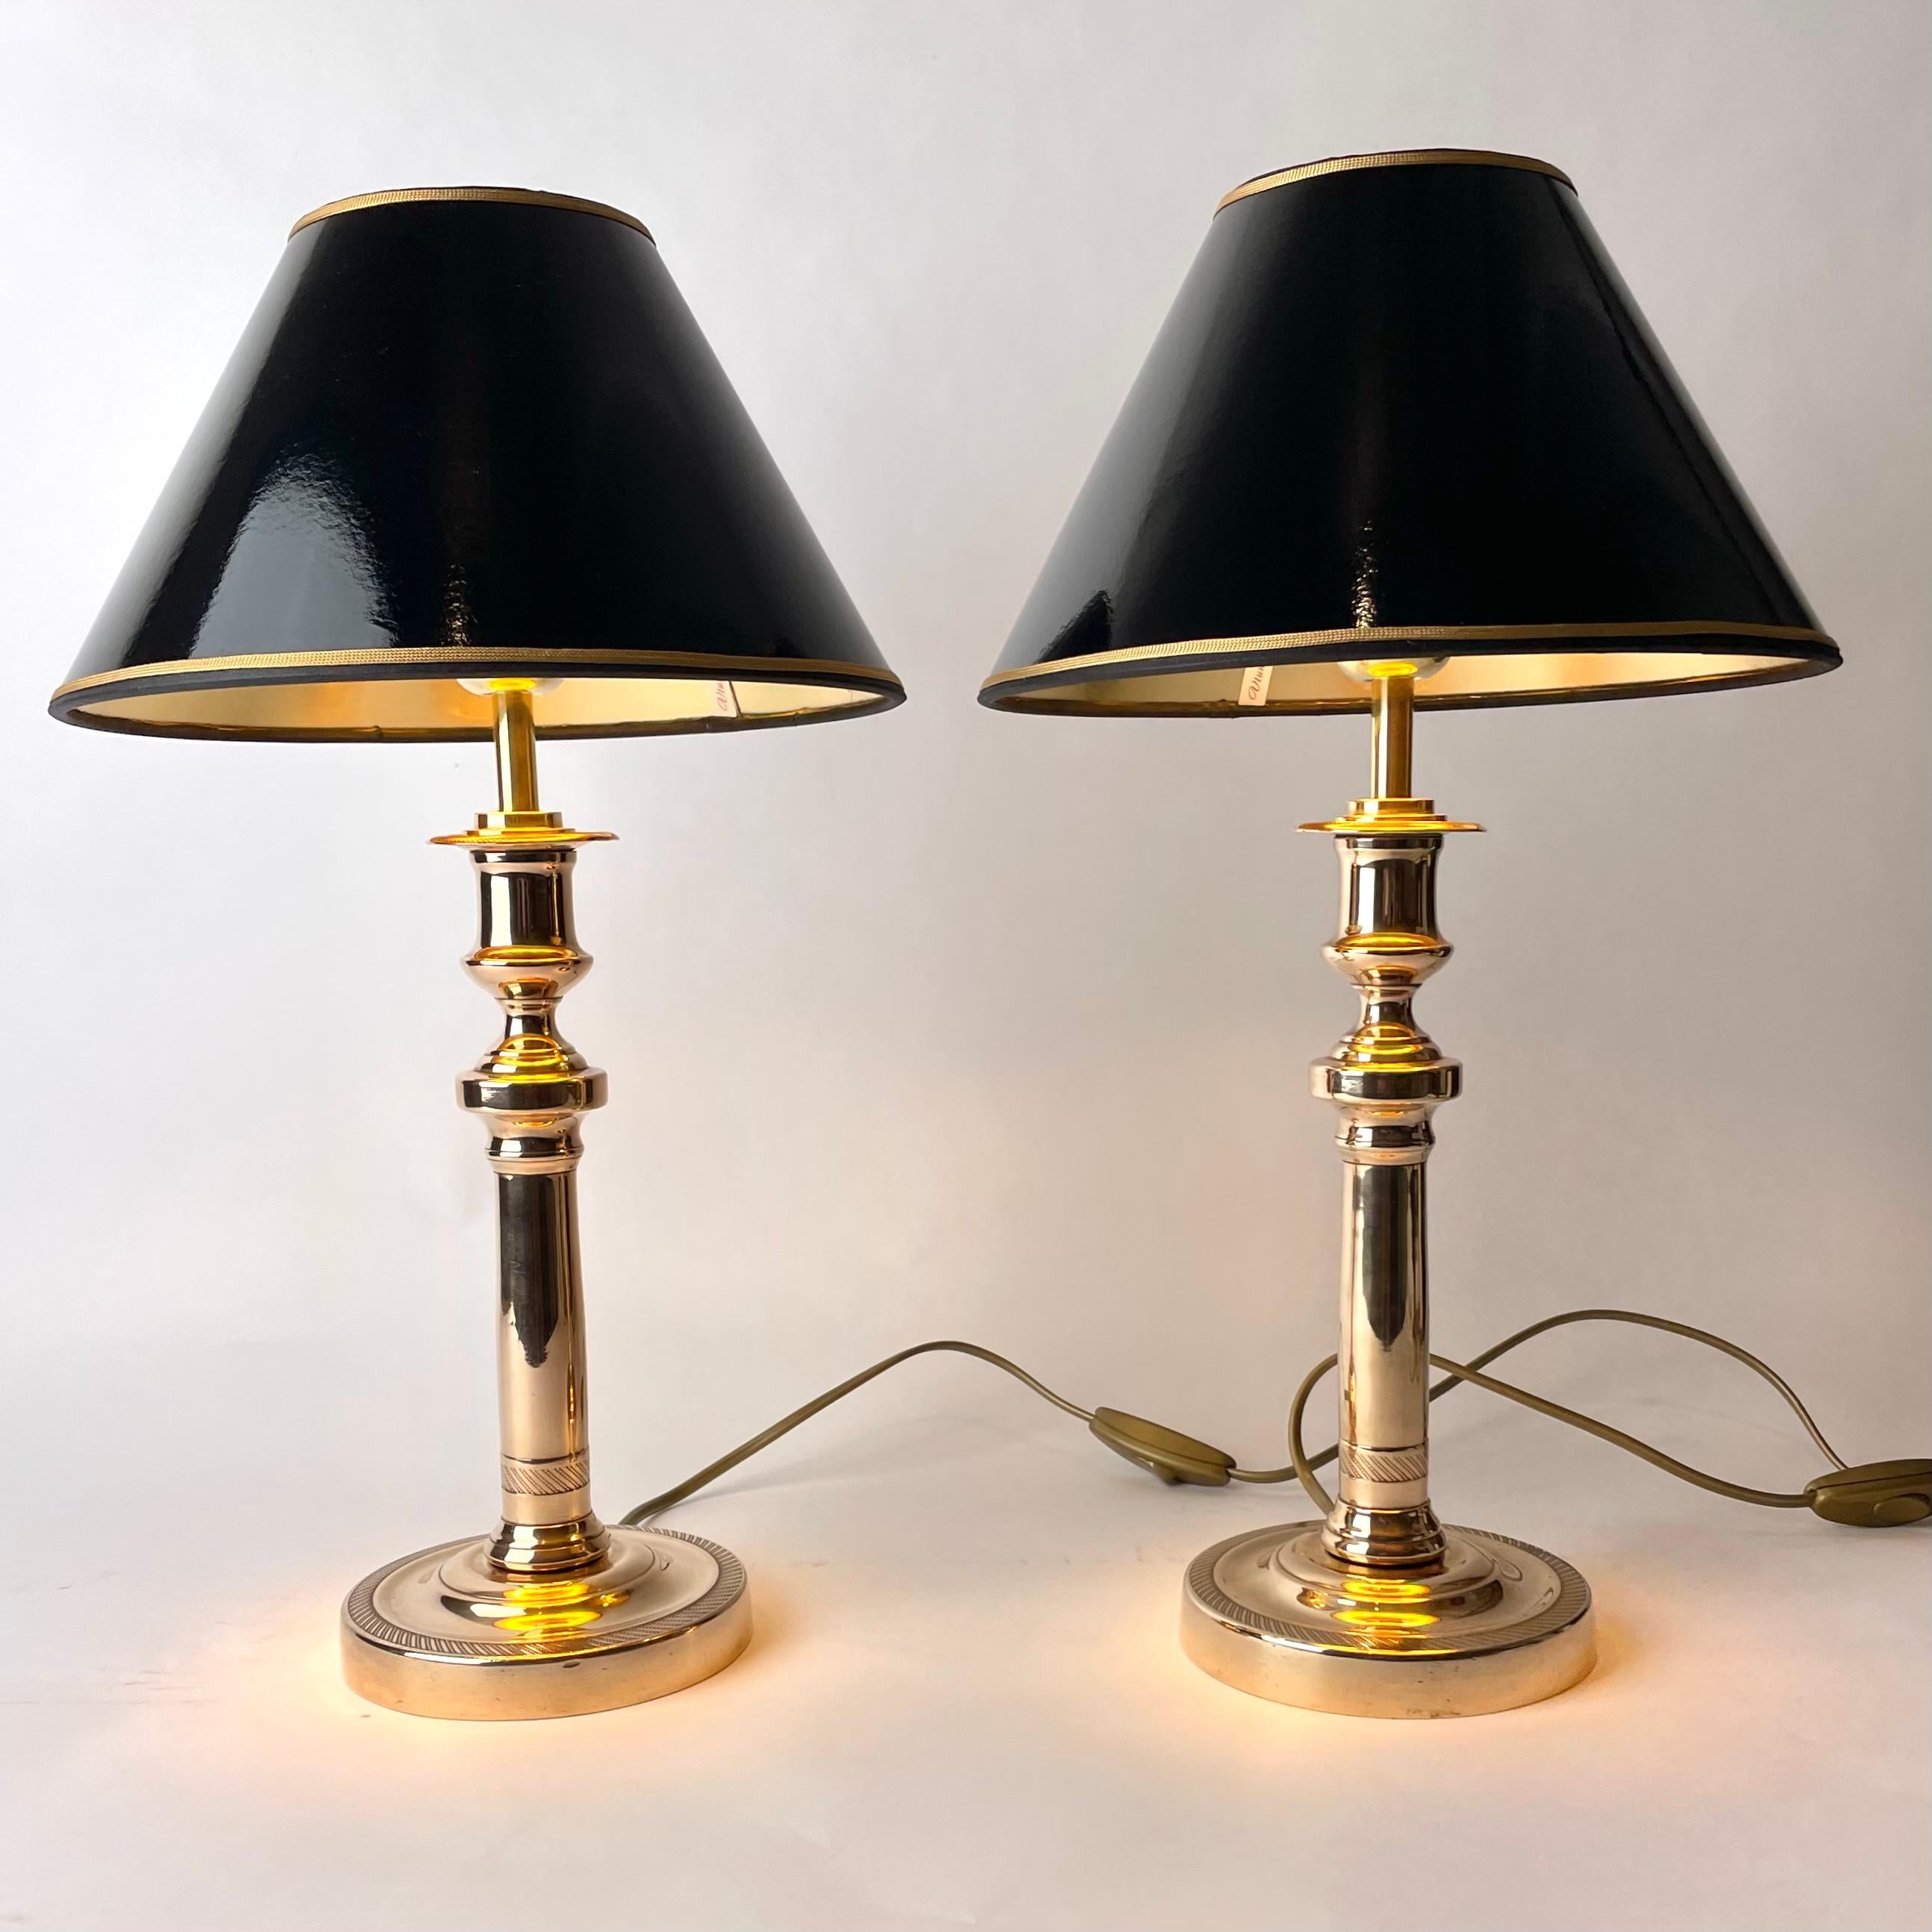 Schönes Paar Empire Tischlampen in Bronze. Ursprünglich ein Paar Empire-Leuchter aus den 1820er Jahren, die Anfang des 20. Jahrhunderts zu Tischlampen umfunktioniert wurden.

Neu verkabelte Elektrizität 

Neue Lampenschirme aus schwarzem Lack mit